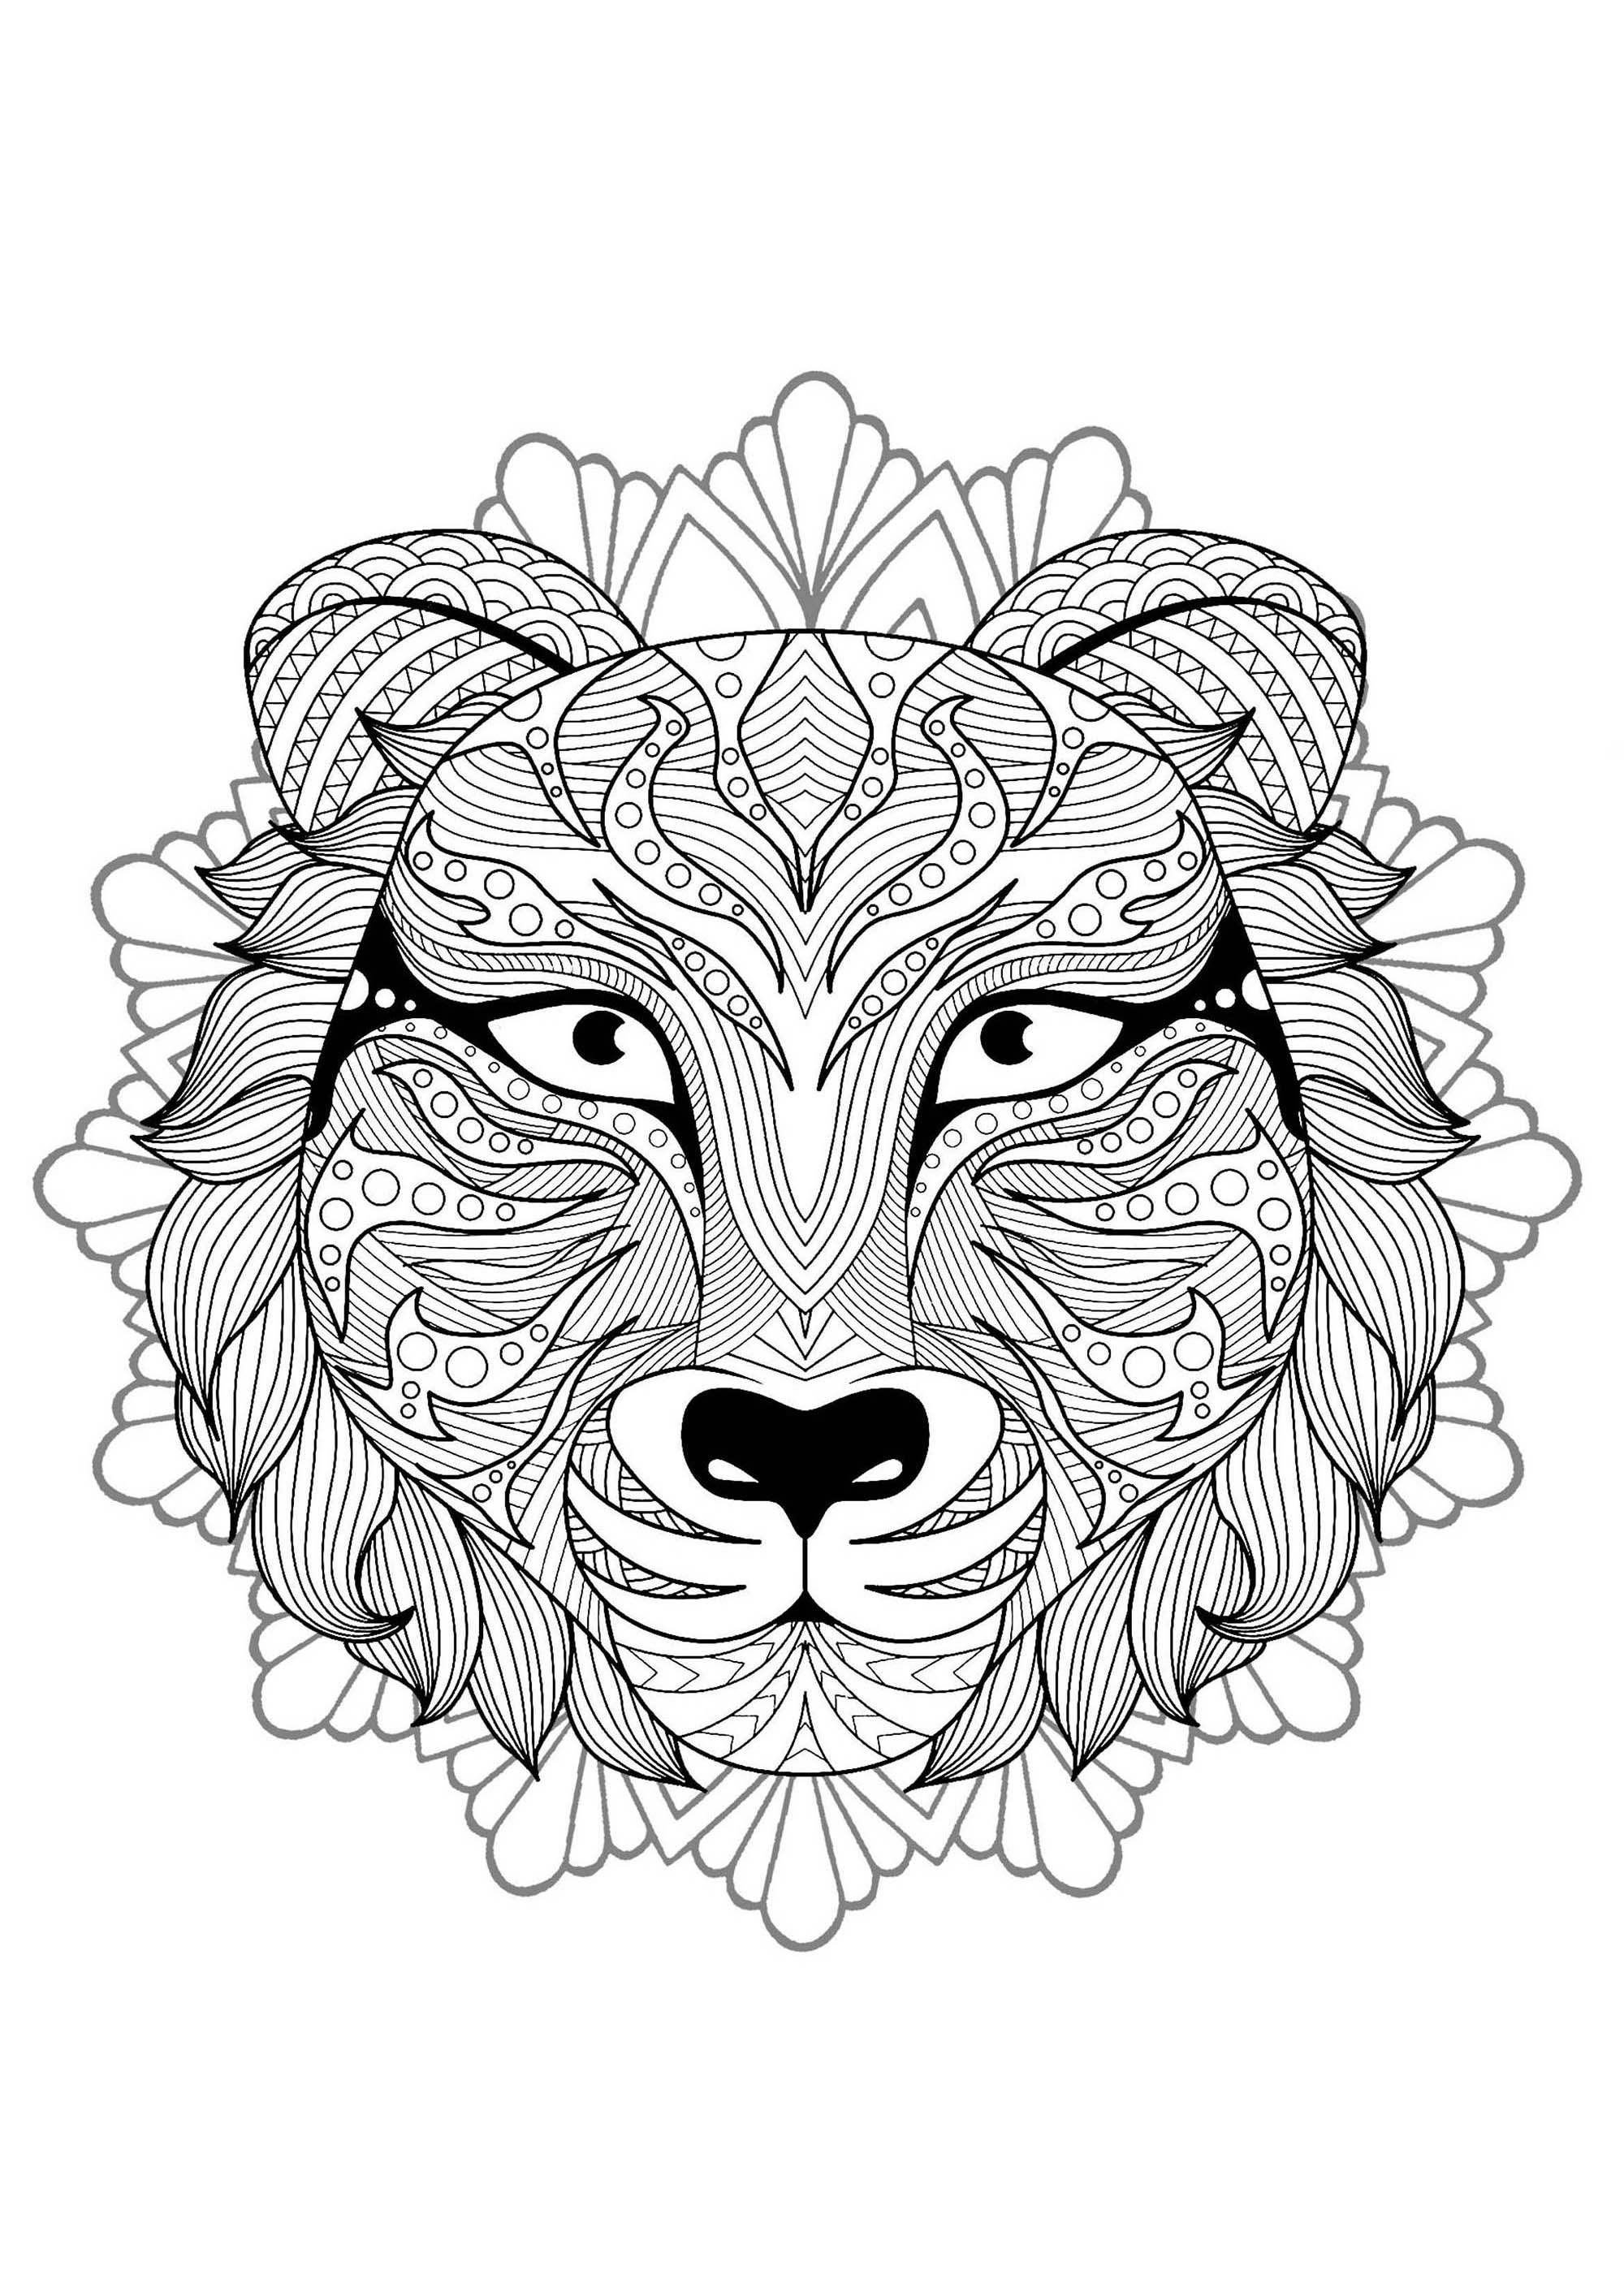 Mandala para colorear con magnífica cabeza de Tigre y motivos florales / redondeados de fondo